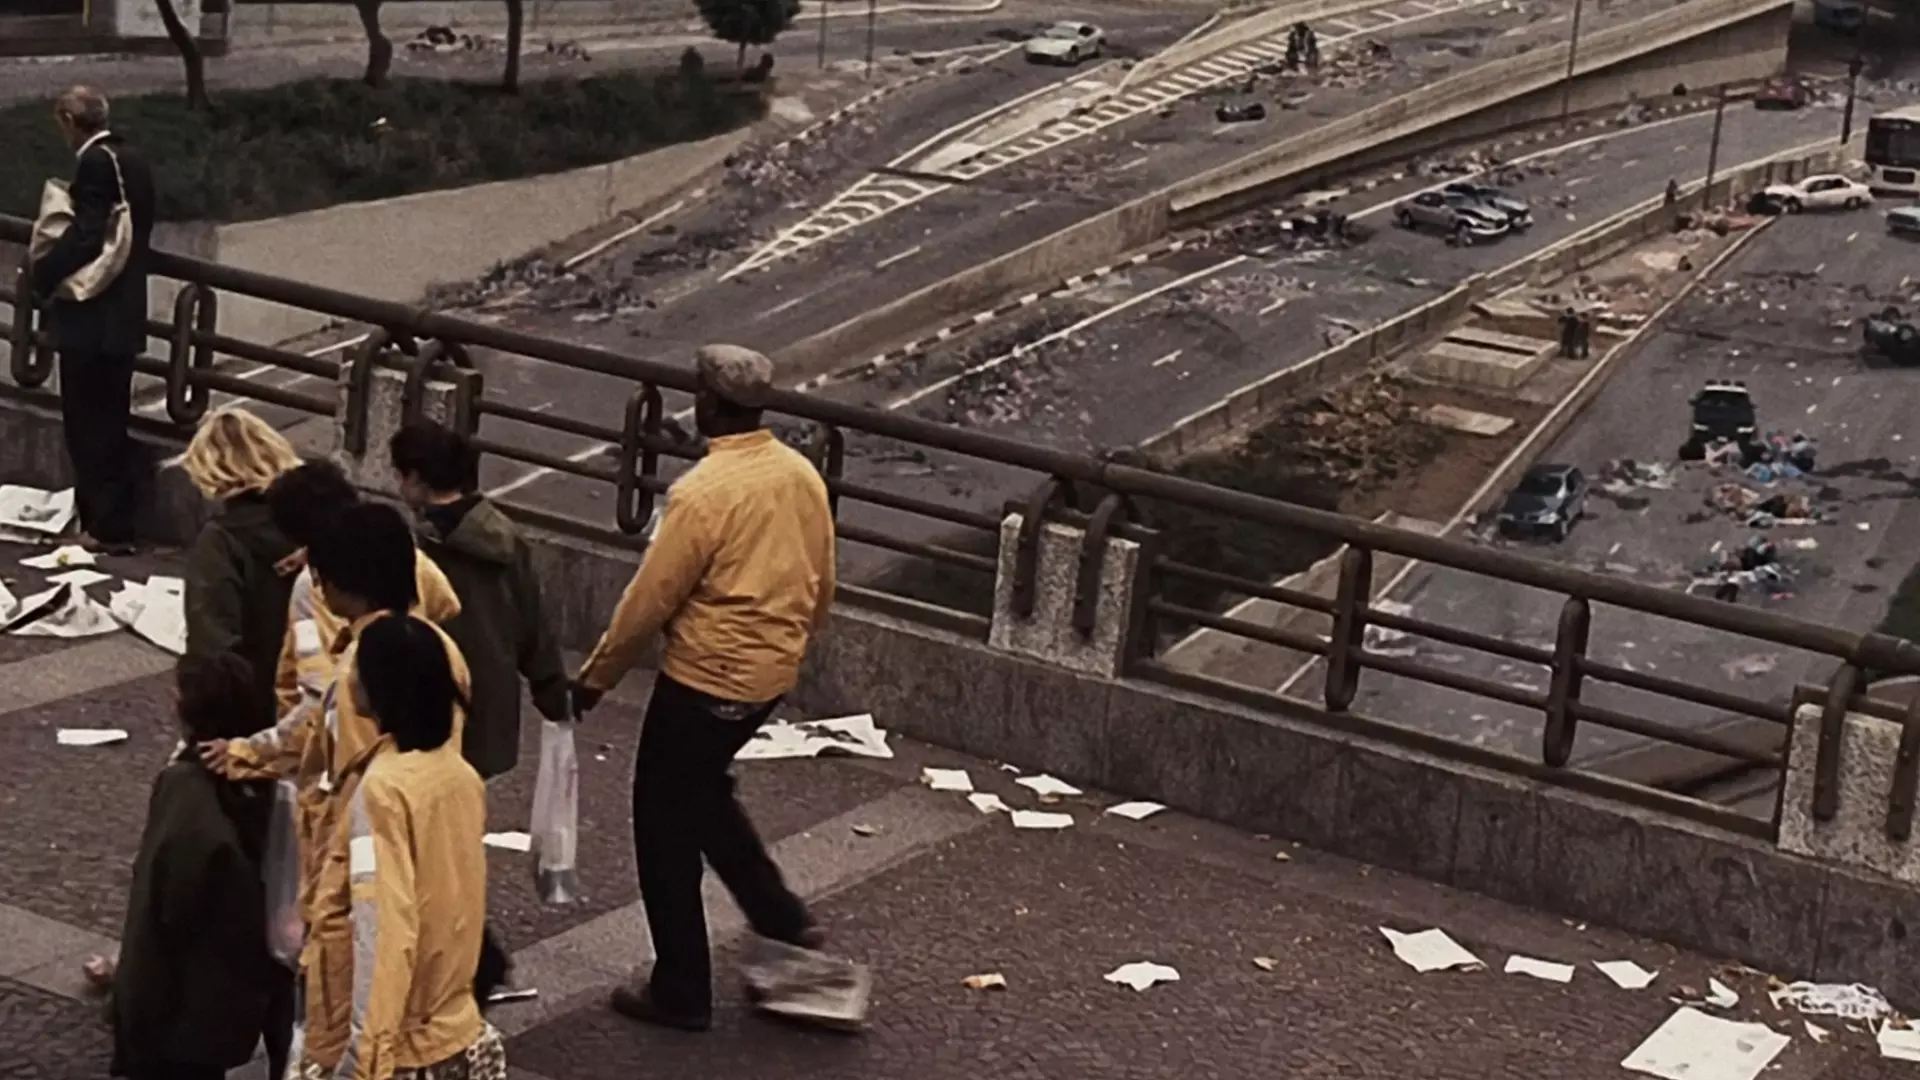 مردم نابینا در حال عبور از روی پل در فیلم کوری